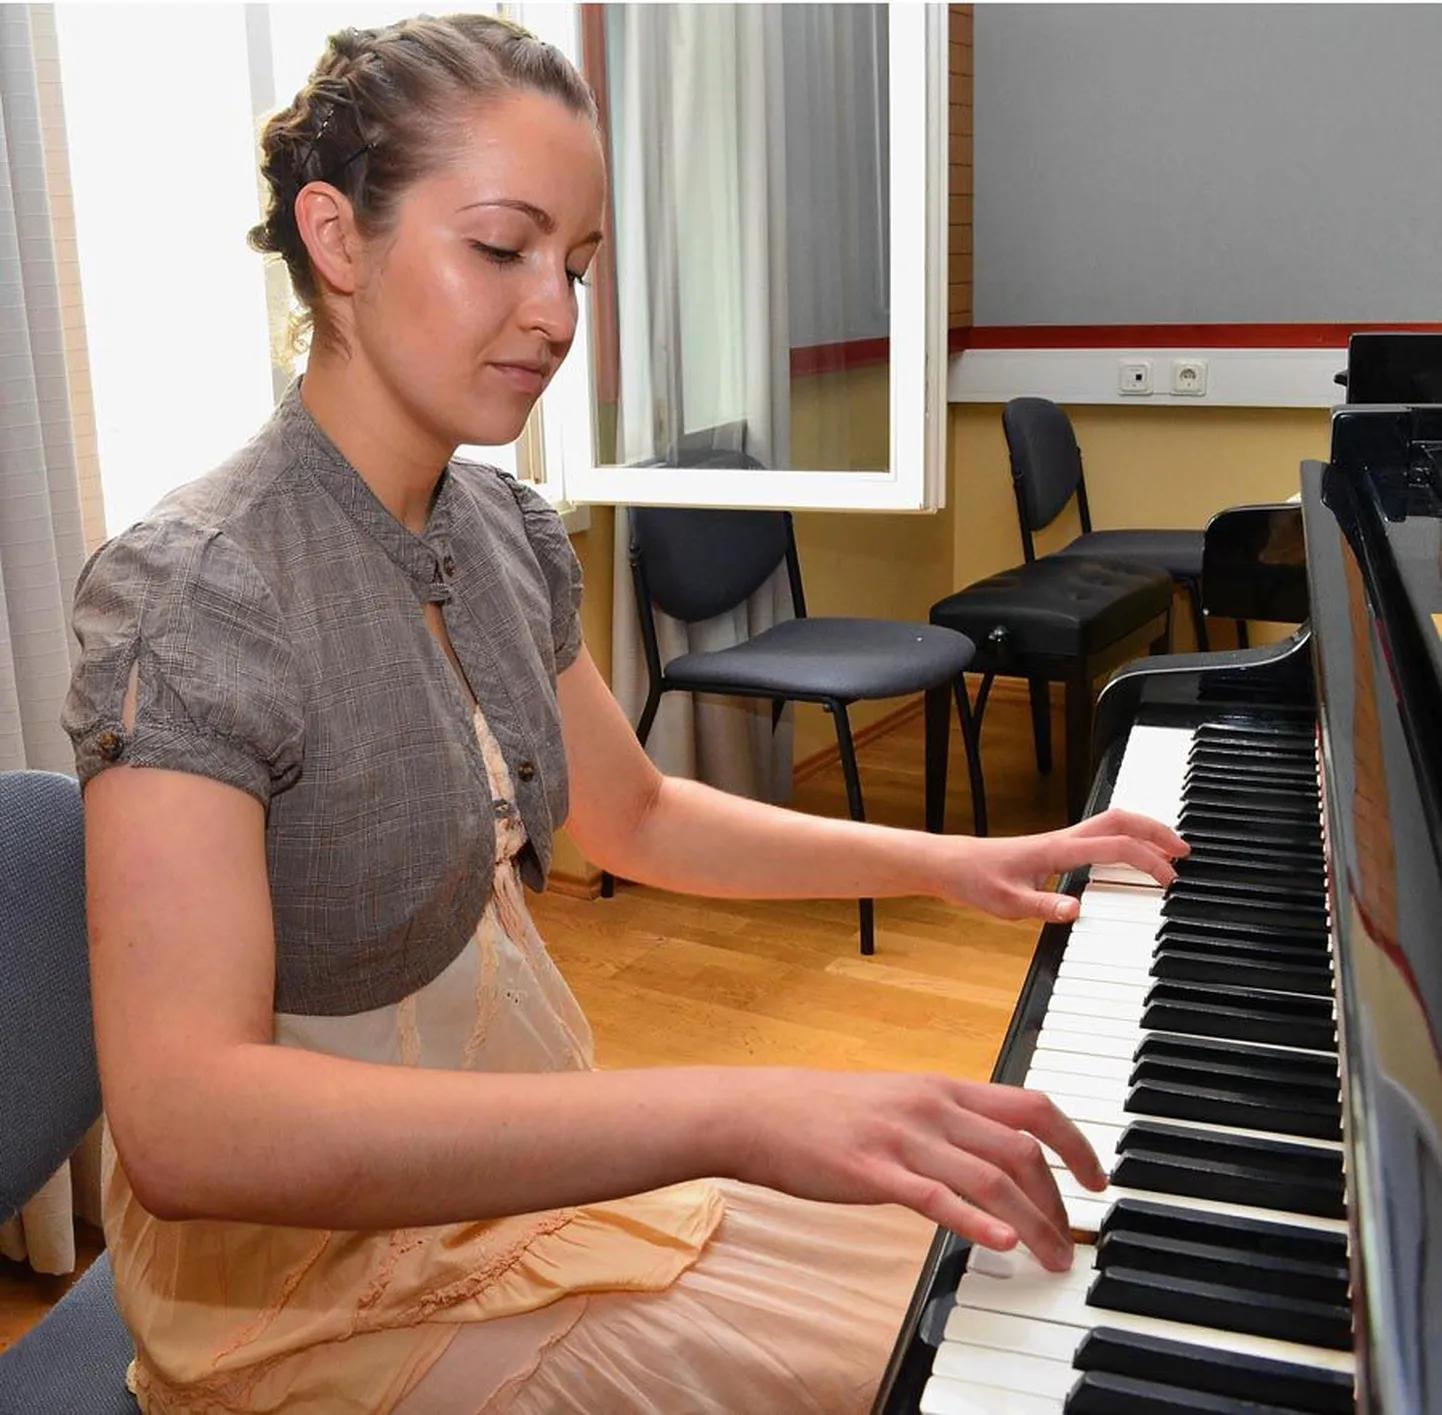 Kultuuriakadeemias lauluõpetajaks õppiv Helina-Victoria Kruup on klaverimängu harjutanud seitse aastat. Huvi muusika vastu juhatas ta bakalaureusetöö teemat otsides kunagise operetilaulja Therese Raideni ning lõpuks sai koolilõputööst elulooraamat.